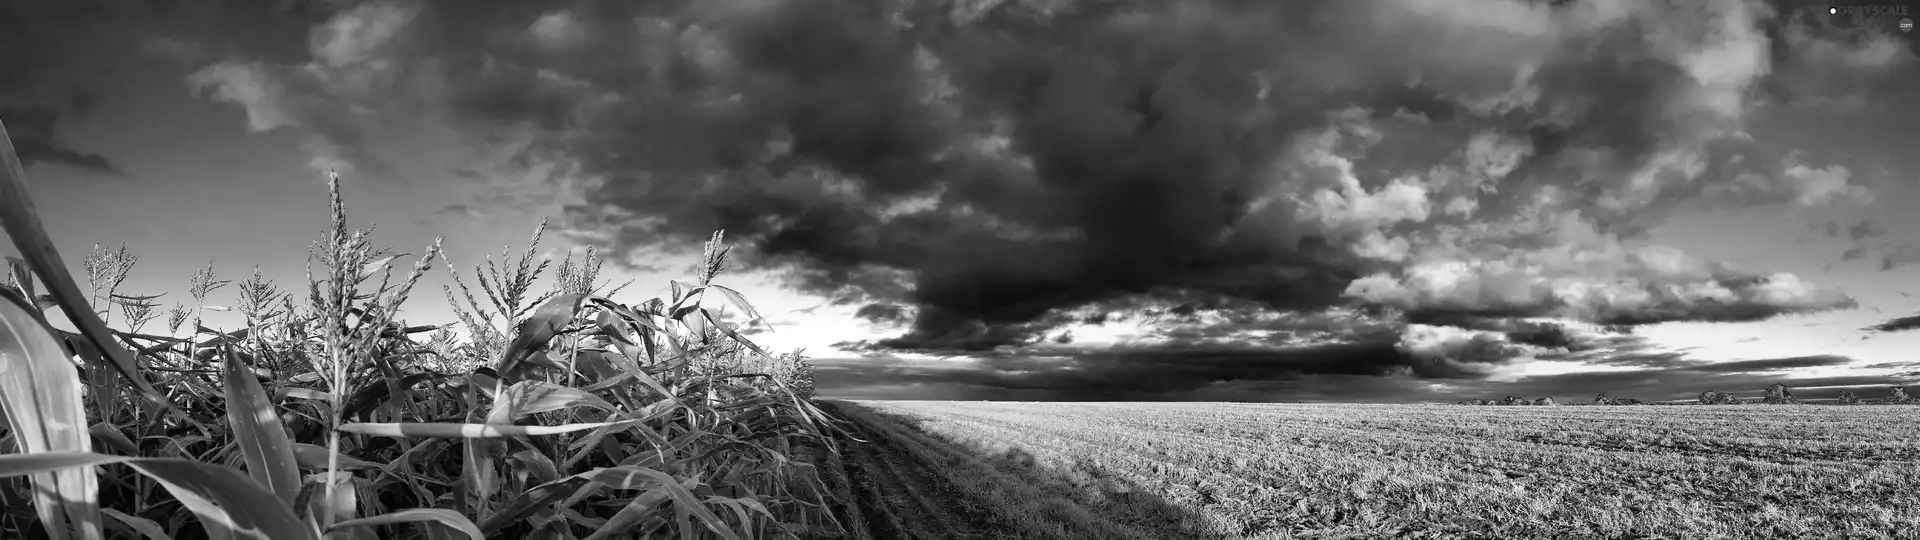 clouds, Field, corn